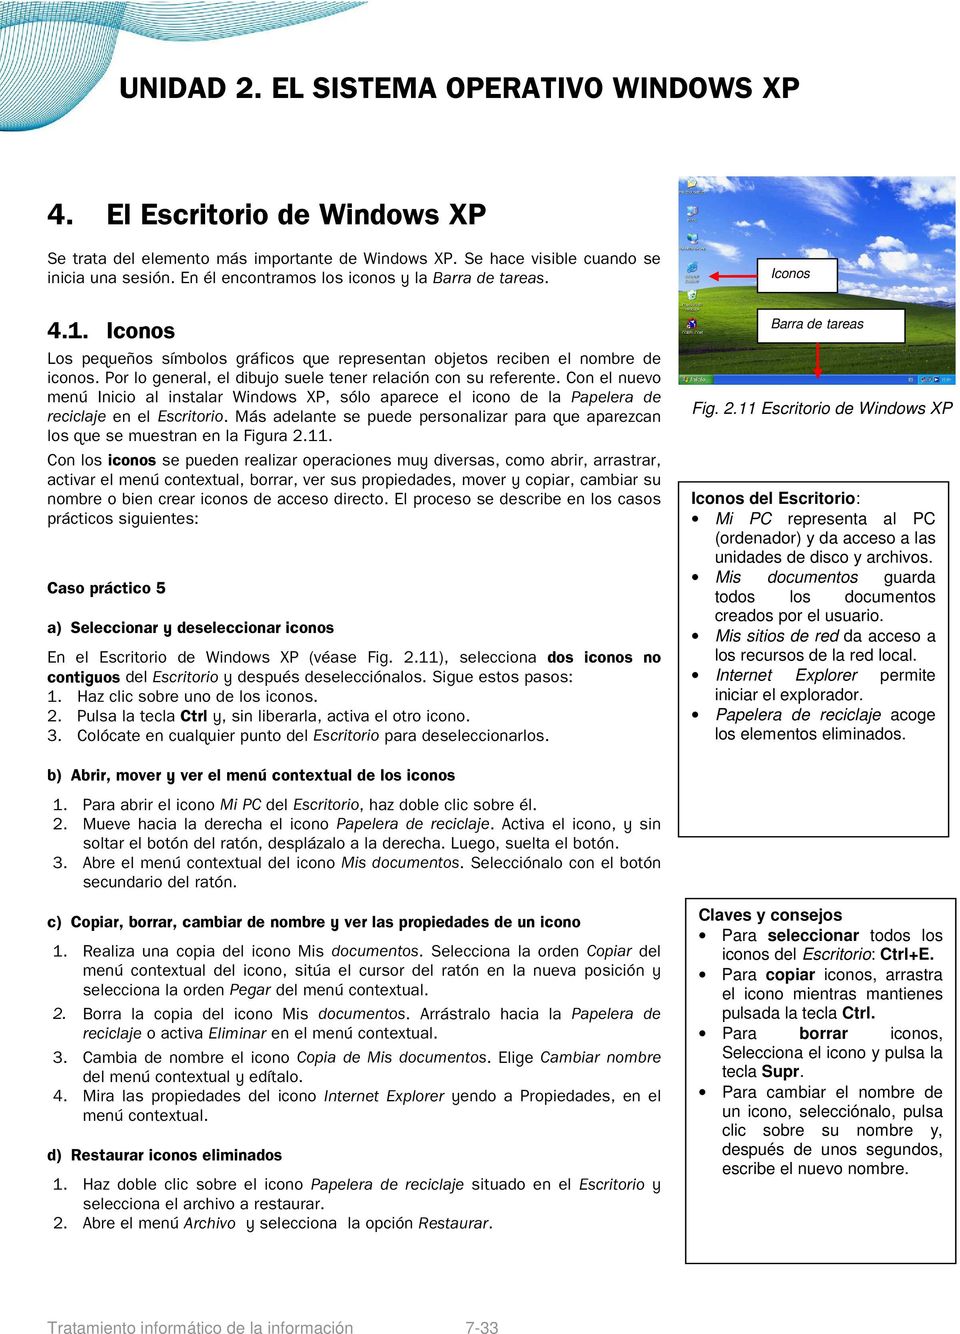 Con el nuevo menú Inicio al instalar Windows XP, sólo aparece el icono de la Papelera de reciclaje en el Escritorio.